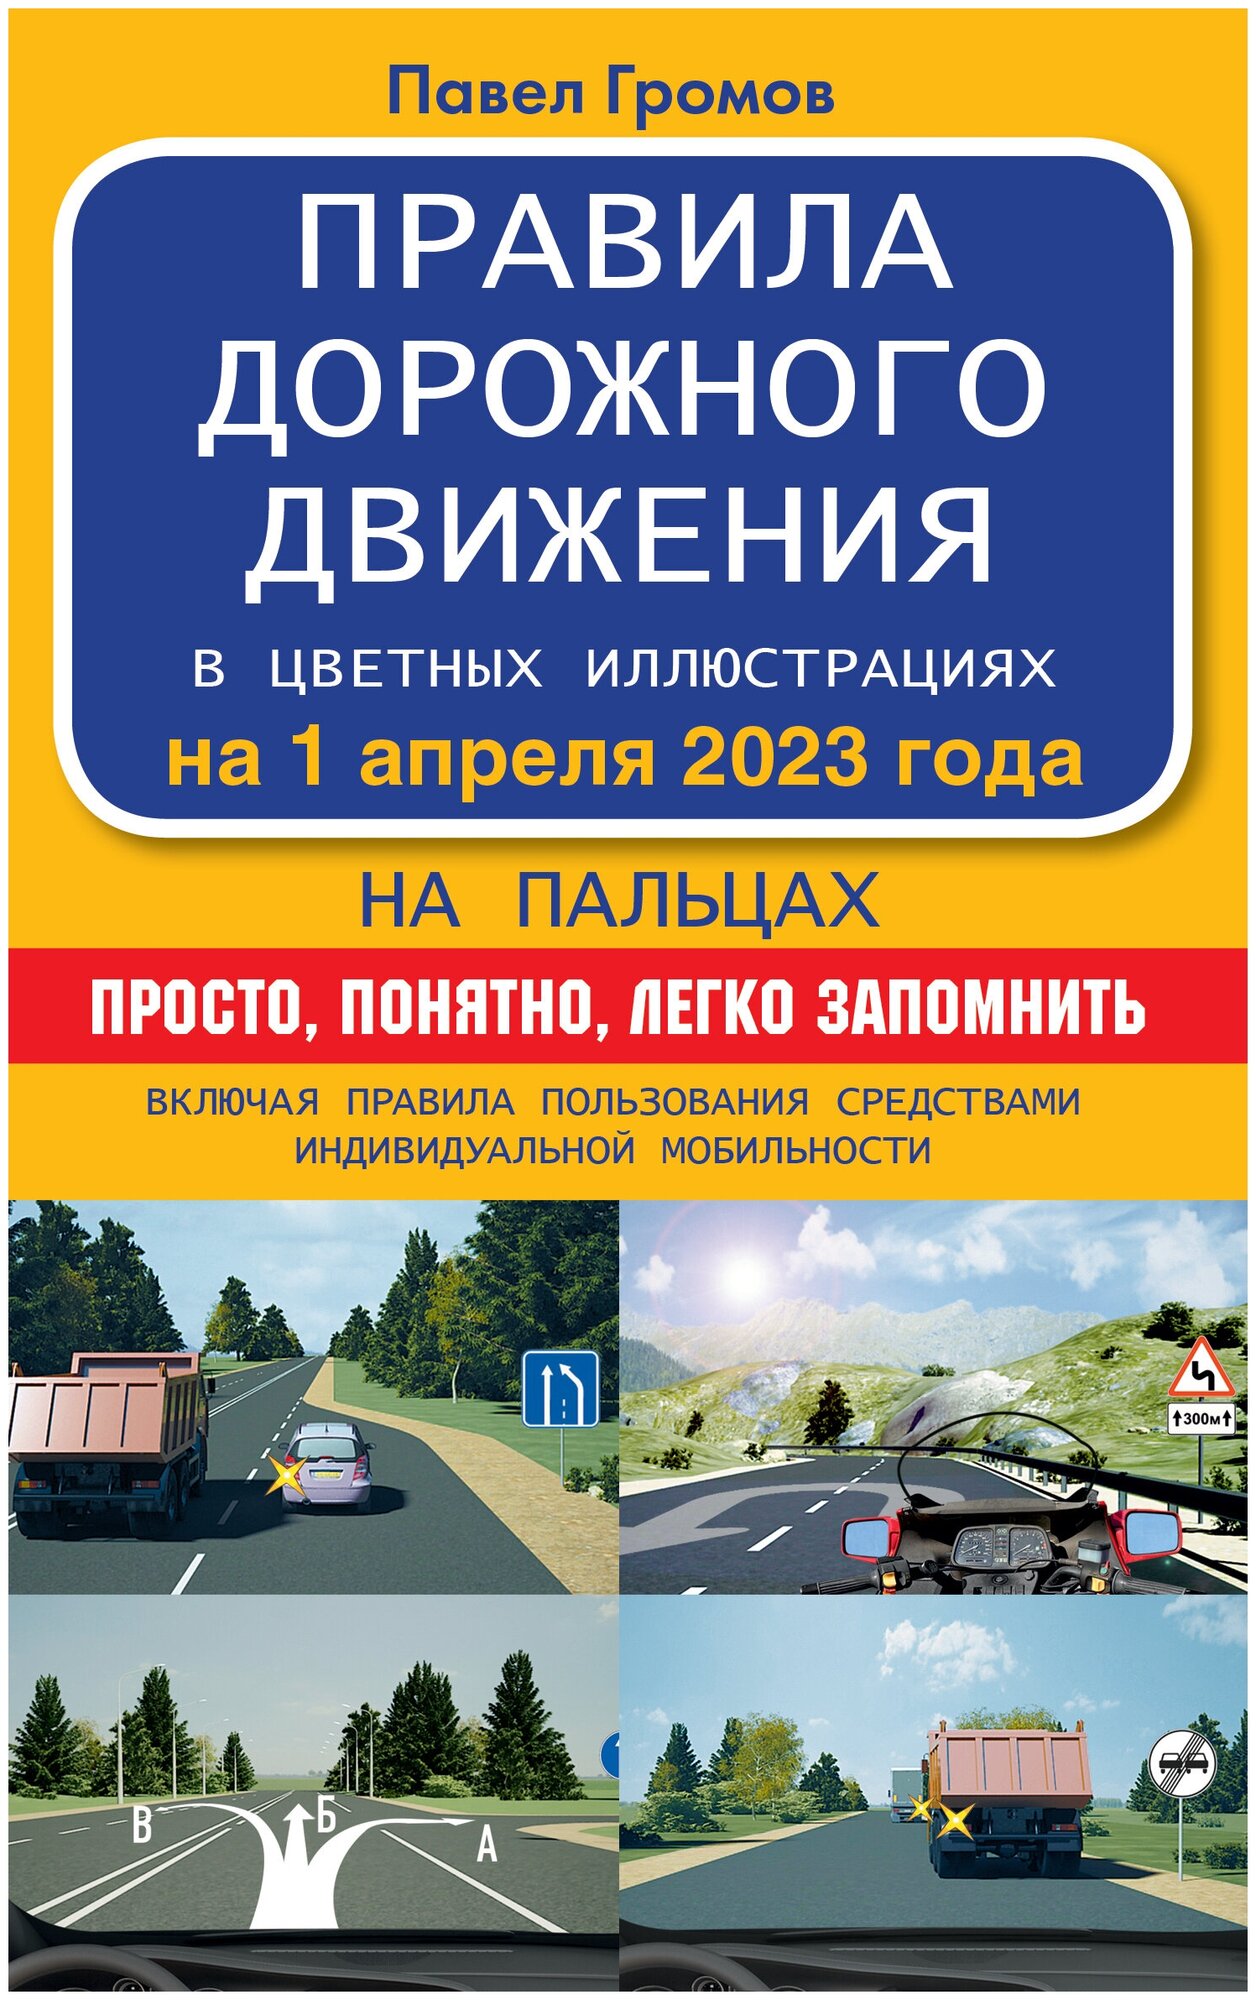 Правила дорожного движения на пальцах: просто понятно легко запомнить на 1 апреля 2023 года.